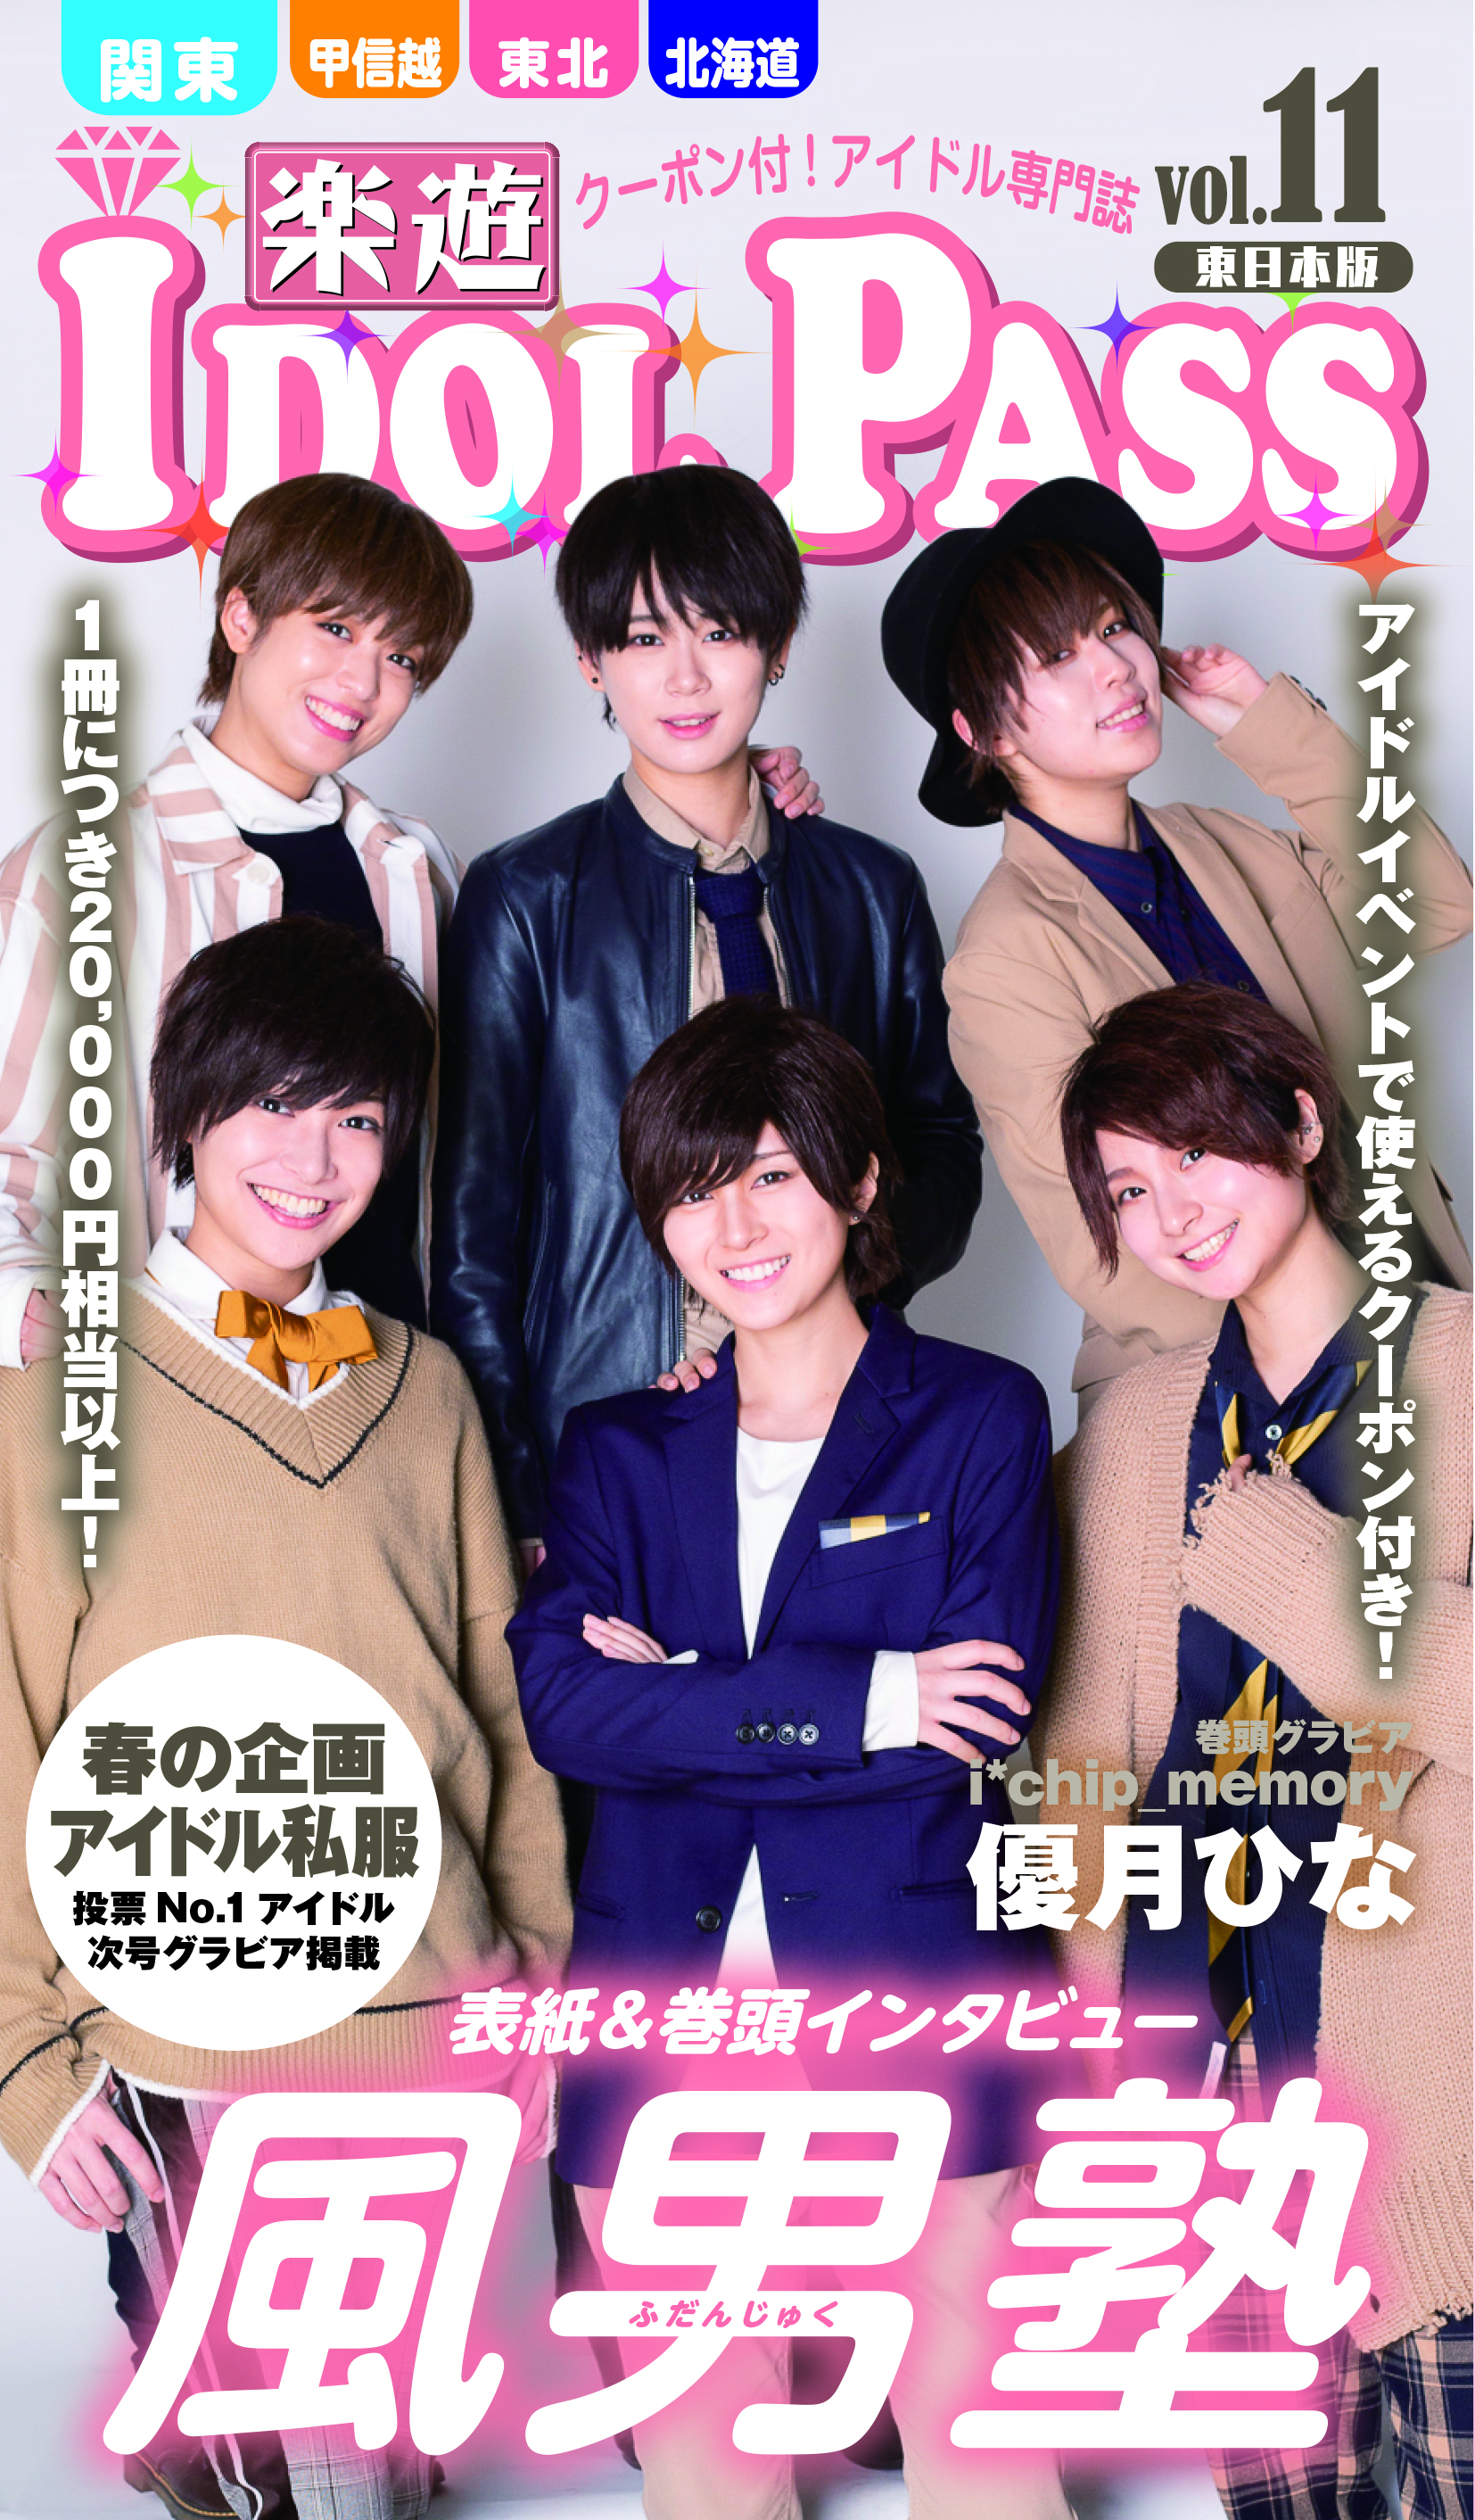 楽遊idol Pass Vol 11表紙は 風男塾 アイドルクーポン専門誌 楽遊idol Pass